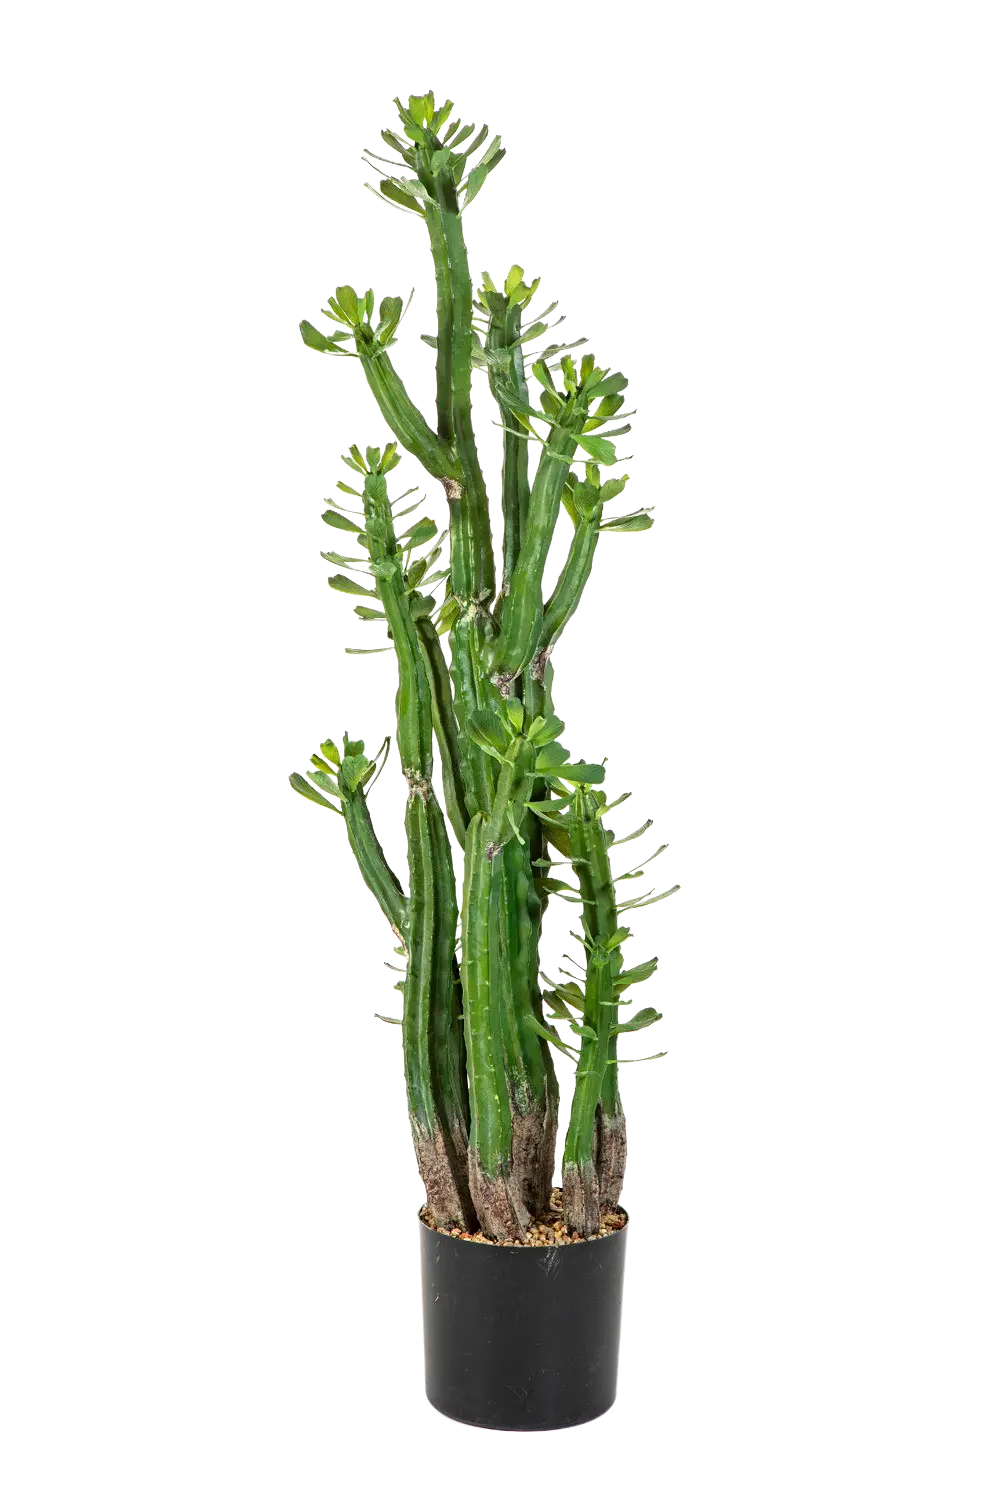 Künstlicher Kaktus - Hermann auf transparentem Hintergrund mit echt wirkenden Kunstblättern. Diese Kunstpflanze gehört zur Gattung/Familie der "Kakteen" bzw. "Kunst-Kakteen".